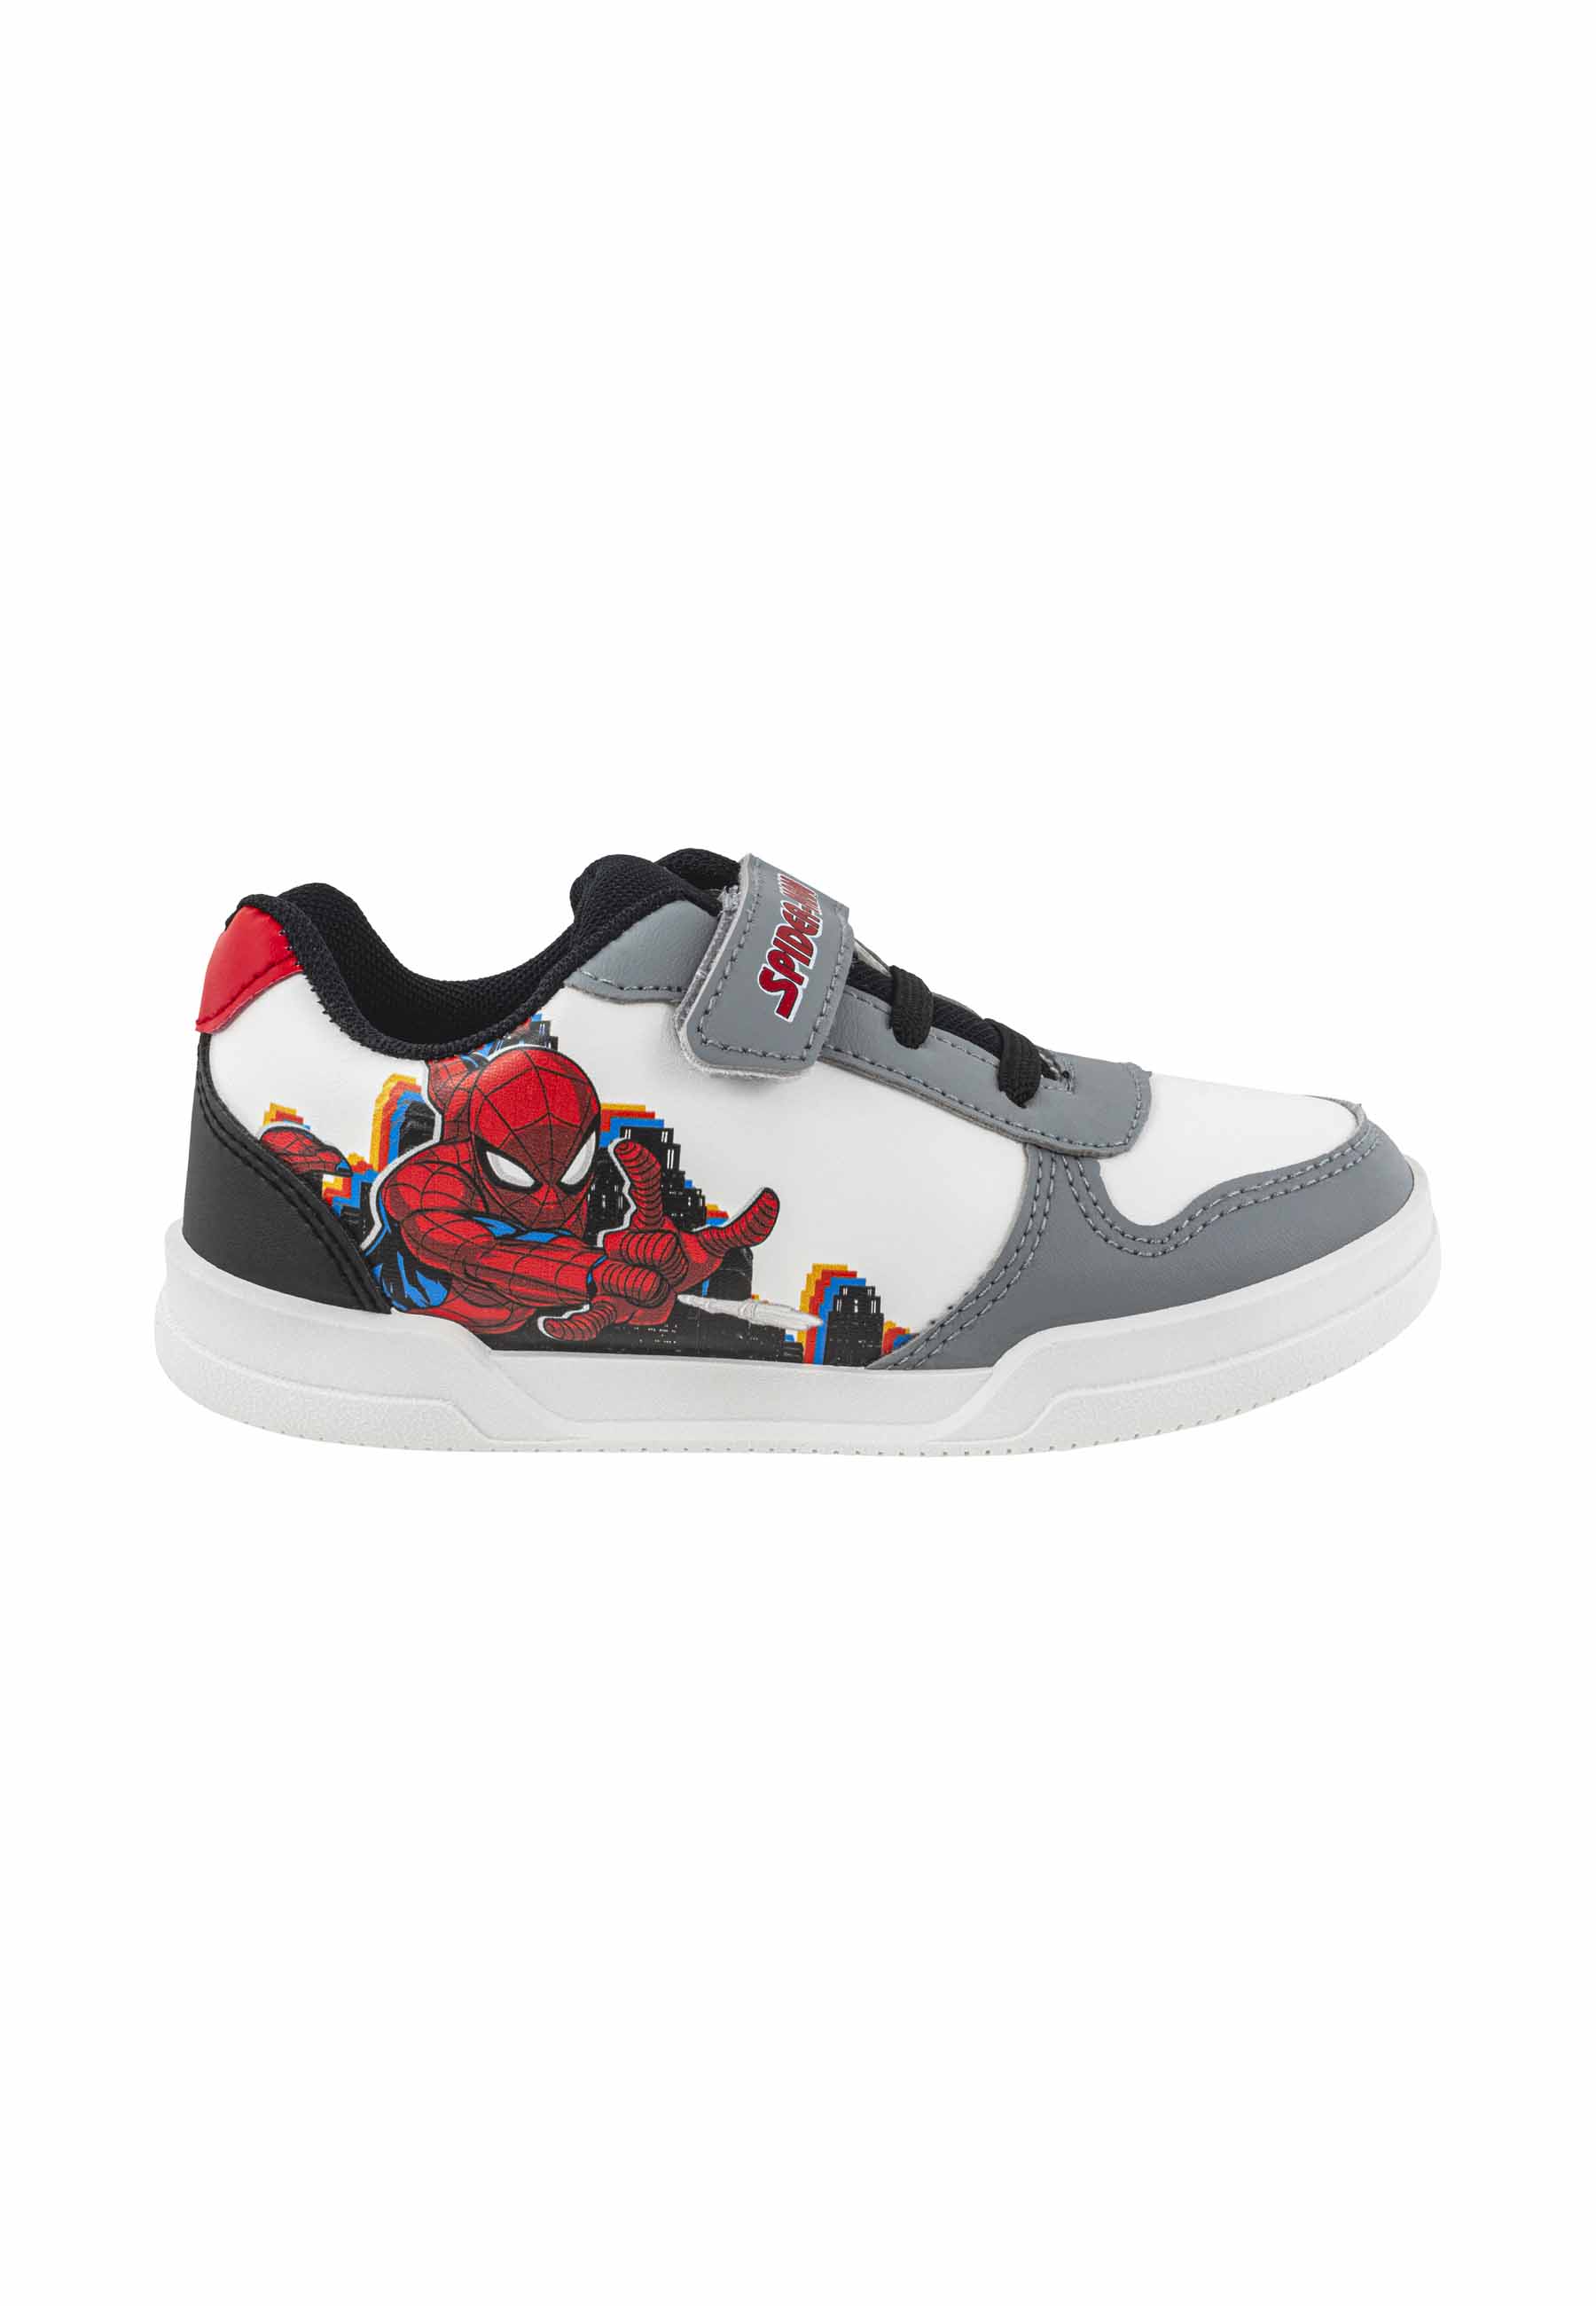 Buty chłopięce Spiderman białe